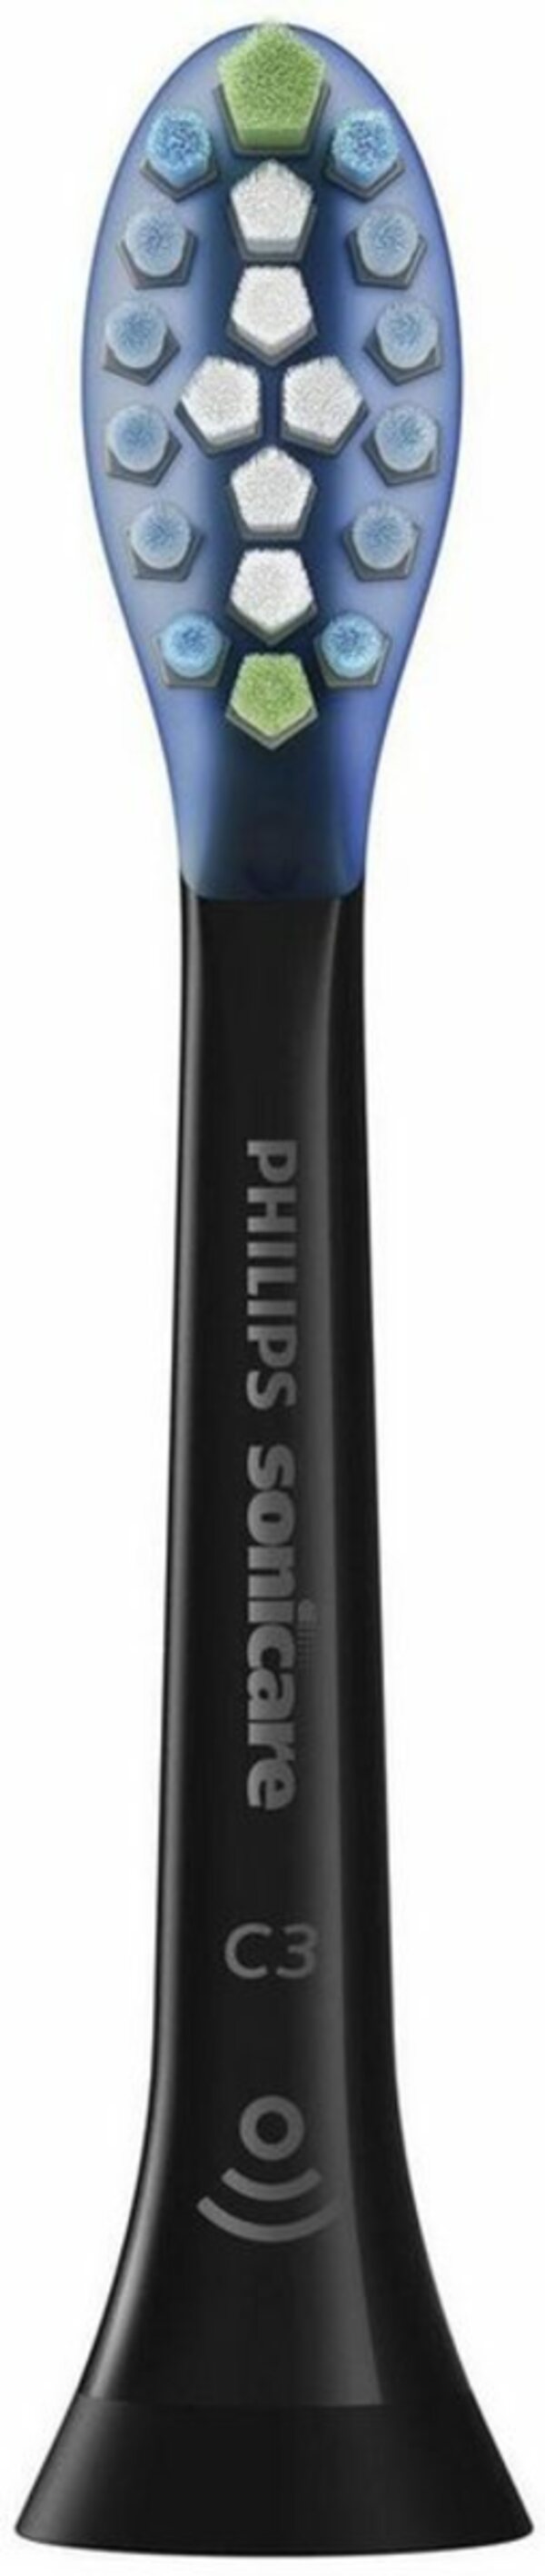 Bild 1 von Philips Sonicare Aufsteckbürsten »Premium Plaque Defense«, schwarz